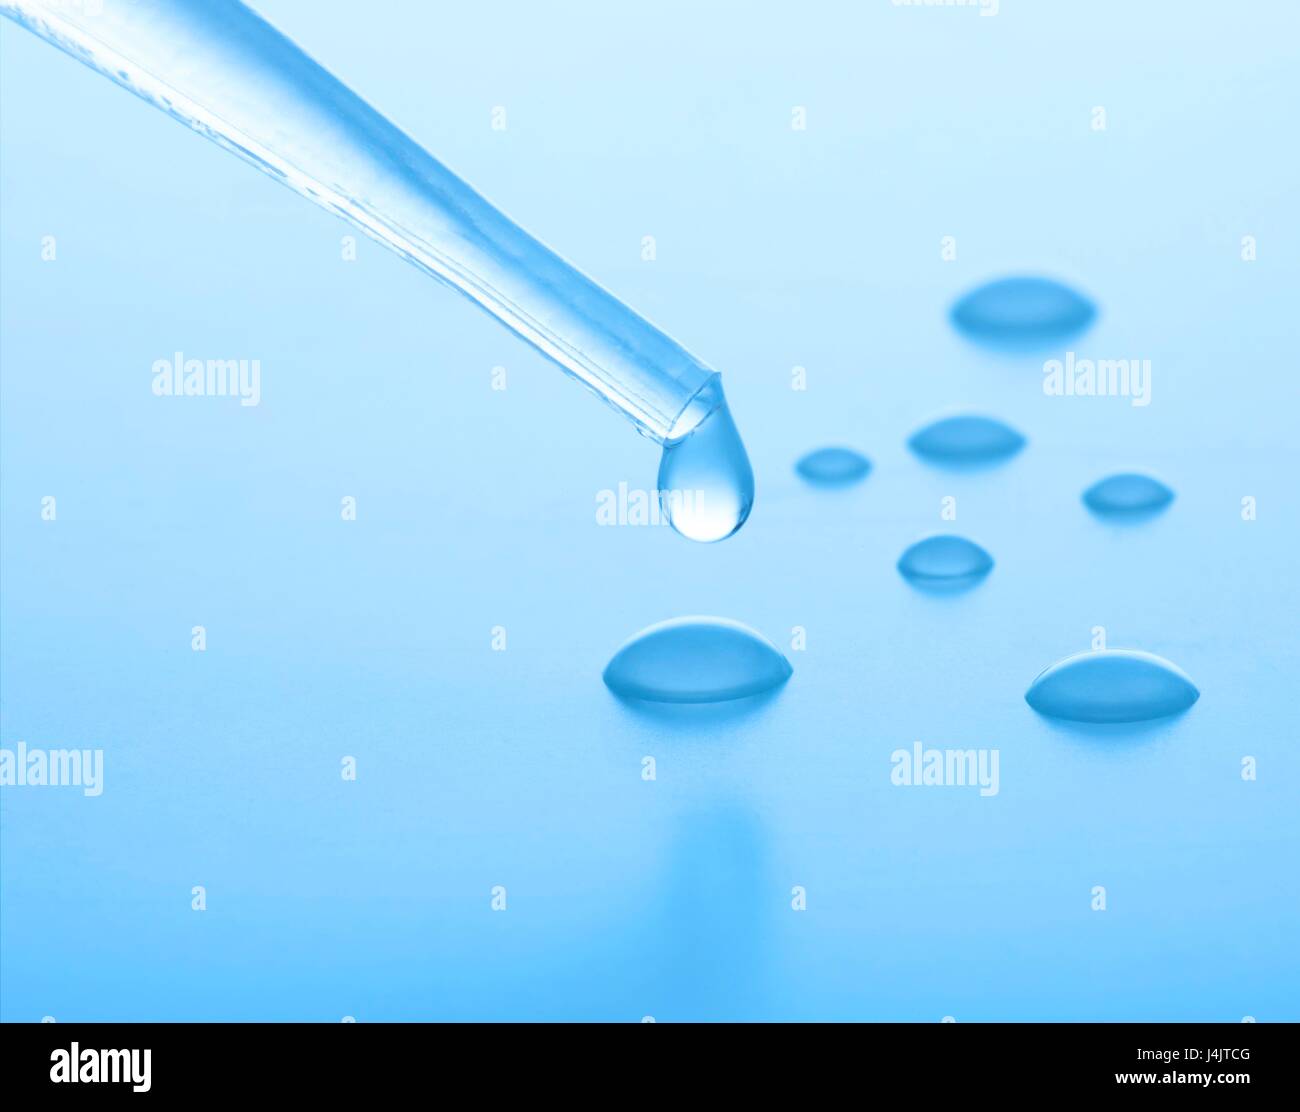 Las gotas de agua goteando de una pipeta, Foto de estudio. Foto de stock